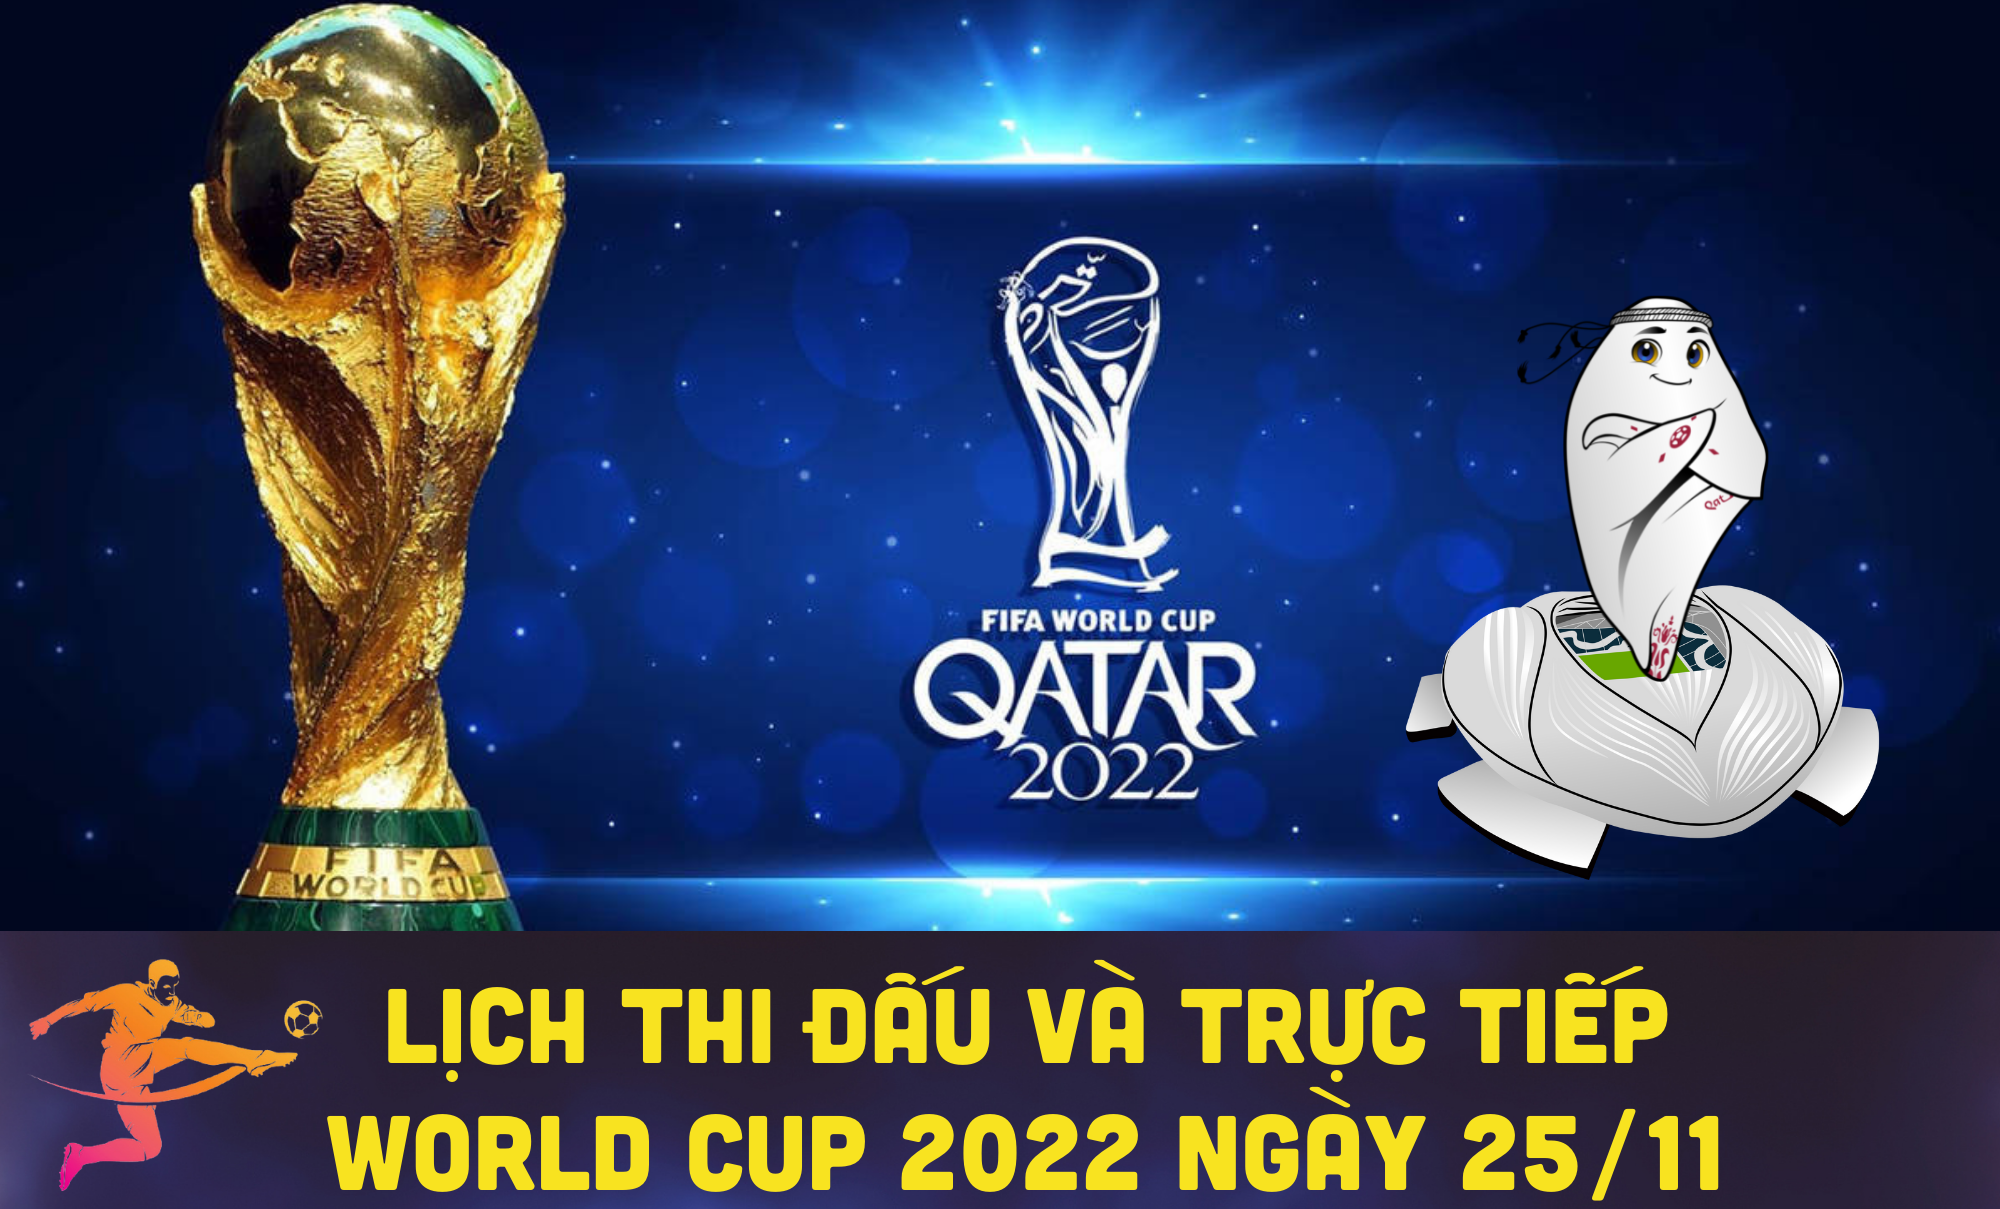 Lịch thi đấu và trực tiếp World Cup 2022 ngày 25/11